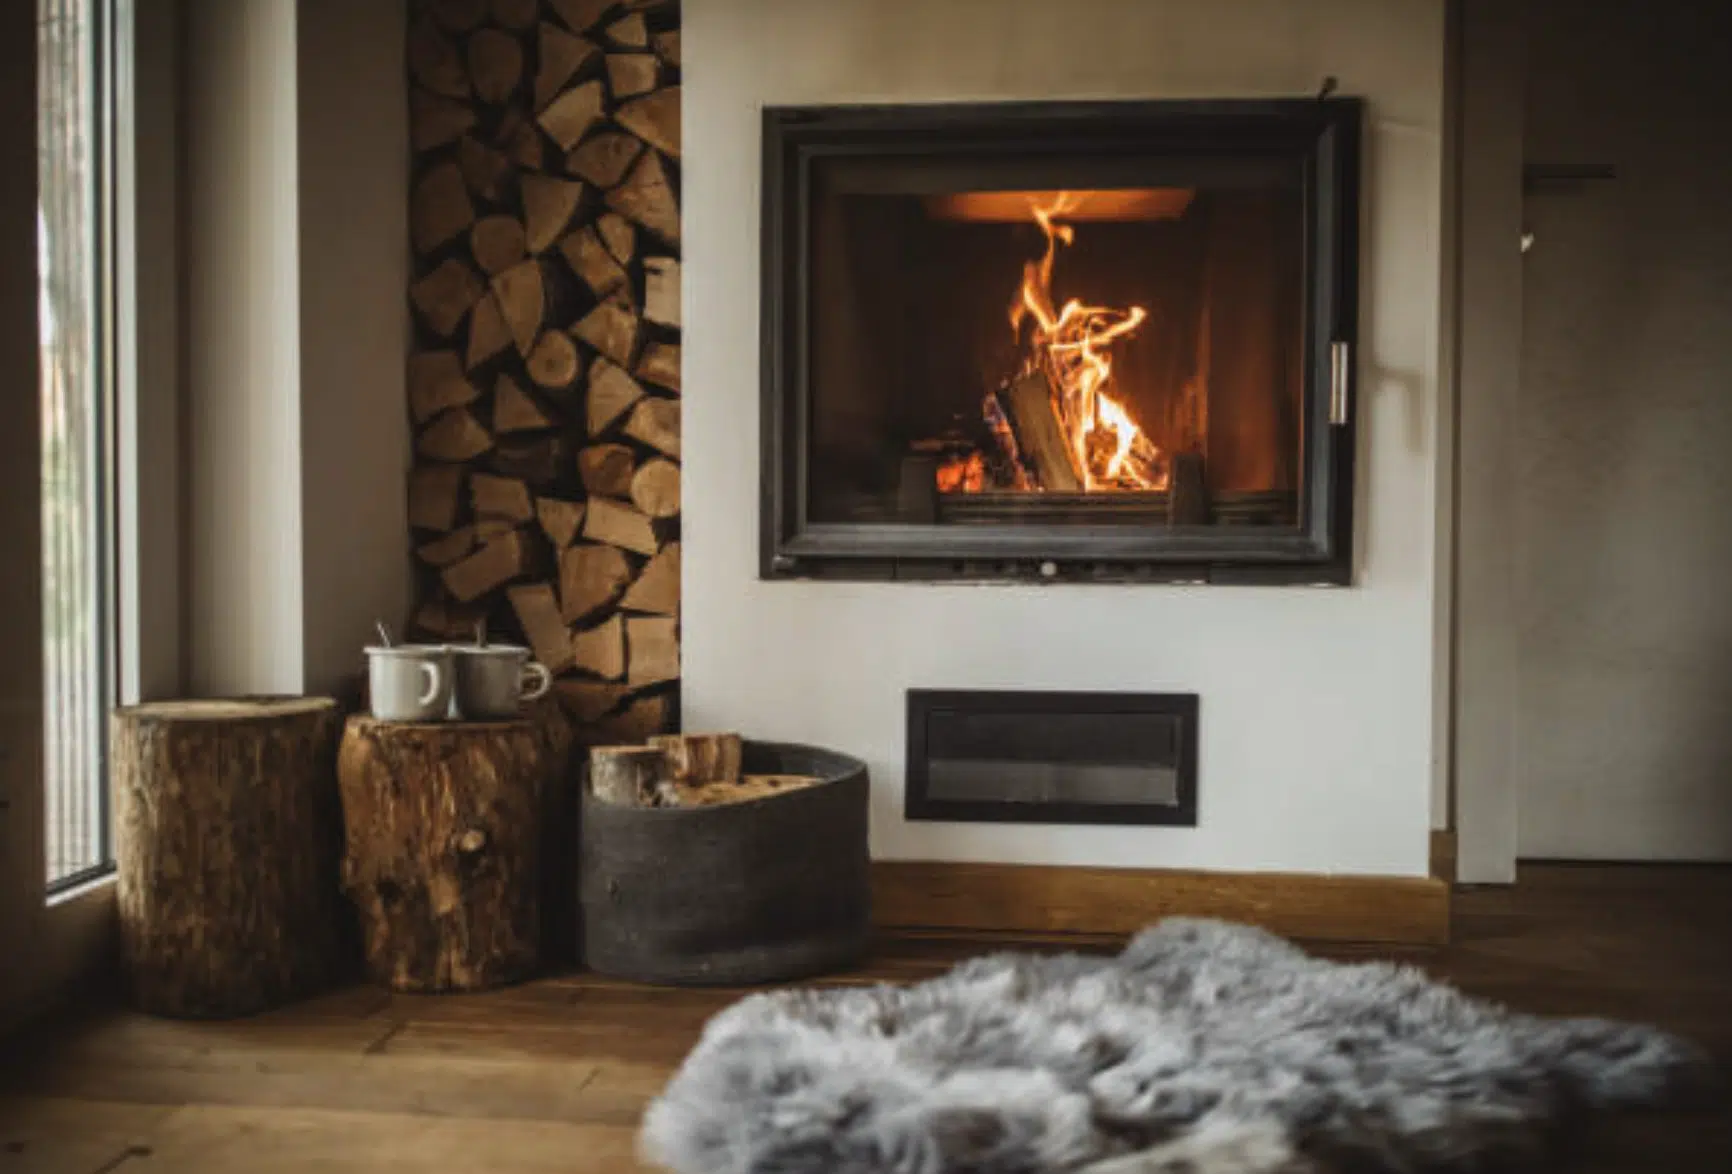 Comment integrer le bois pour votre chauffage dans votre decoration ?